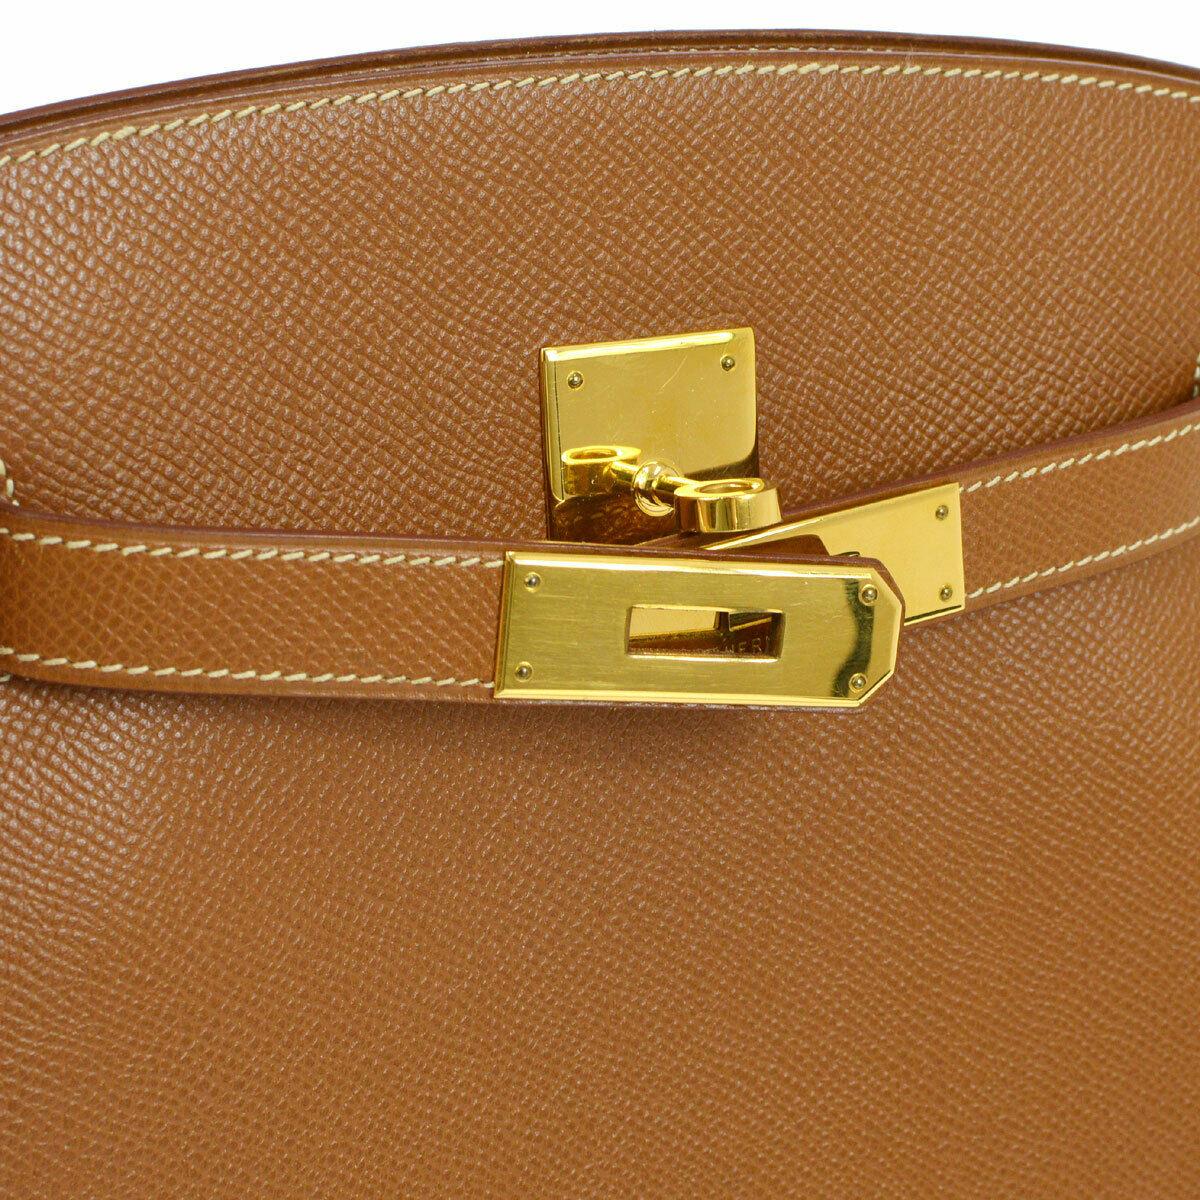 Brown Hermes Cognac Leather Gold Kelly Travel Single Shoulder Large Carryall Bag